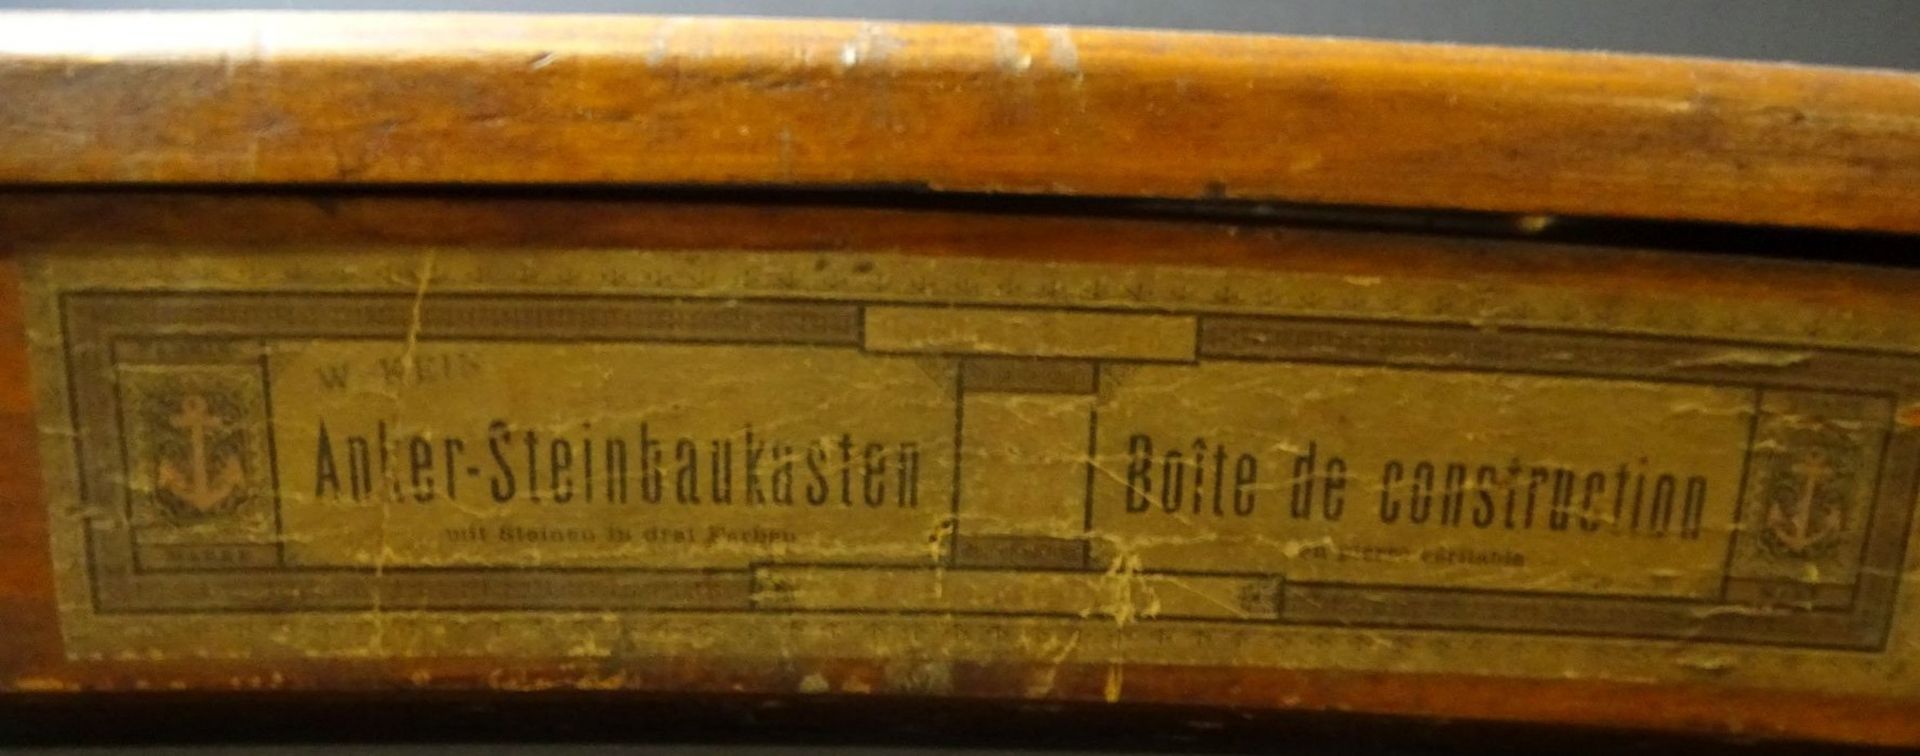 Anker Steinbaukasten in orig. Kasten, wohl fast vollständig?, 33x24 cm, mit Bauplänen - Bild 4 aus 7